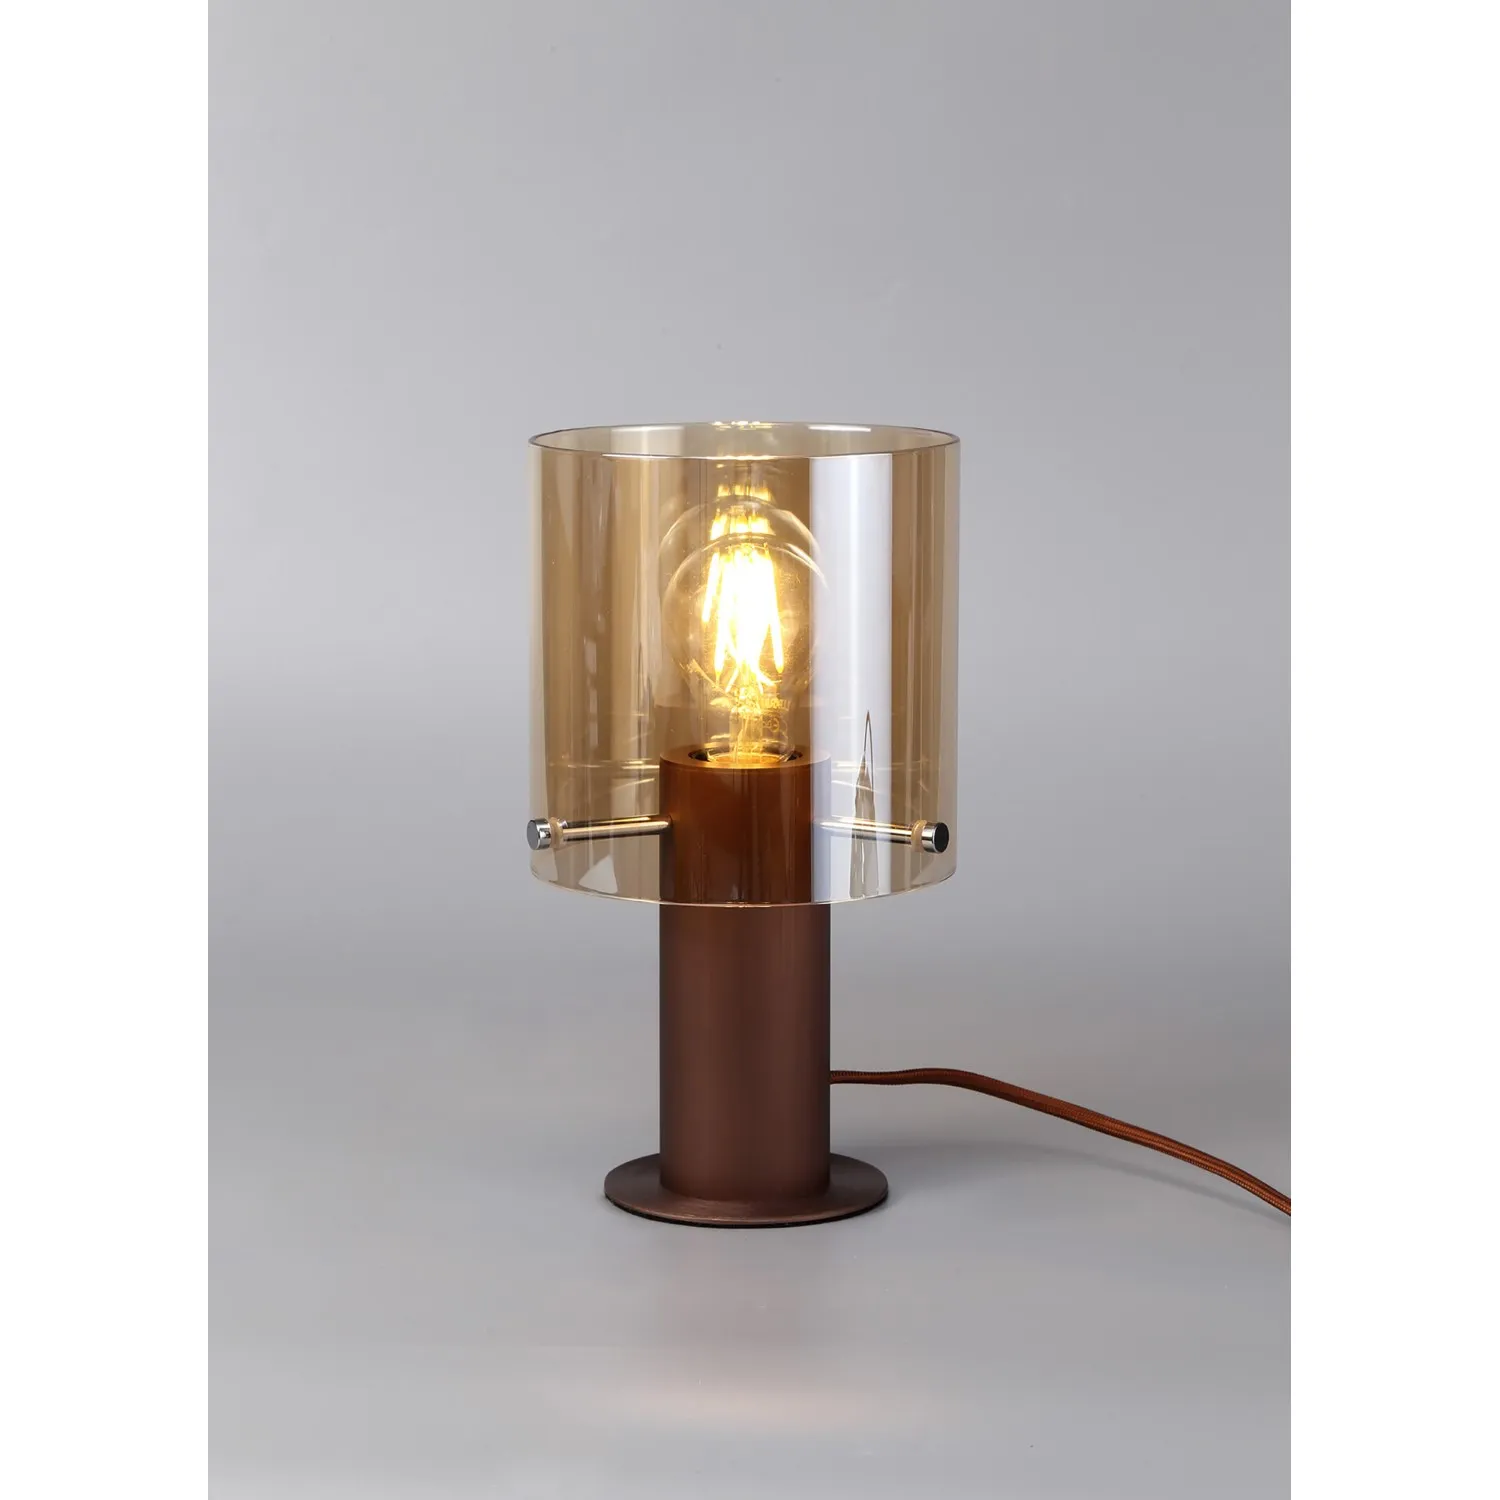 Islington Table Lamp, 1 Light Table Lamp E27, Mocha Amber Glass